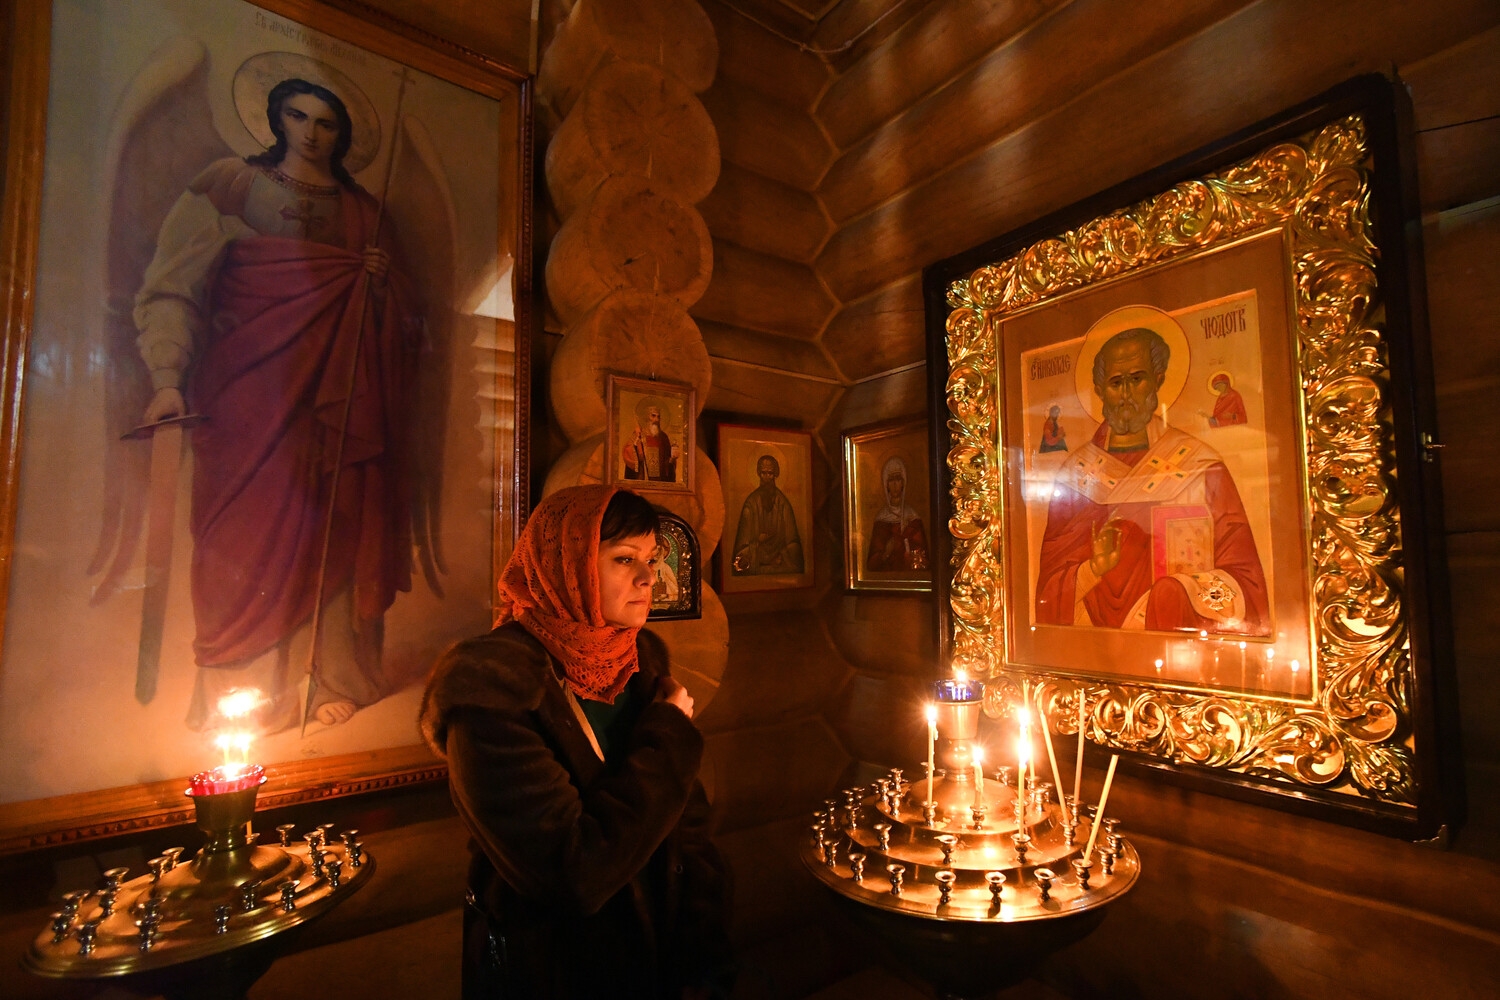 Православные 12 февраля отмечают Трехсвятие, или Васильев день